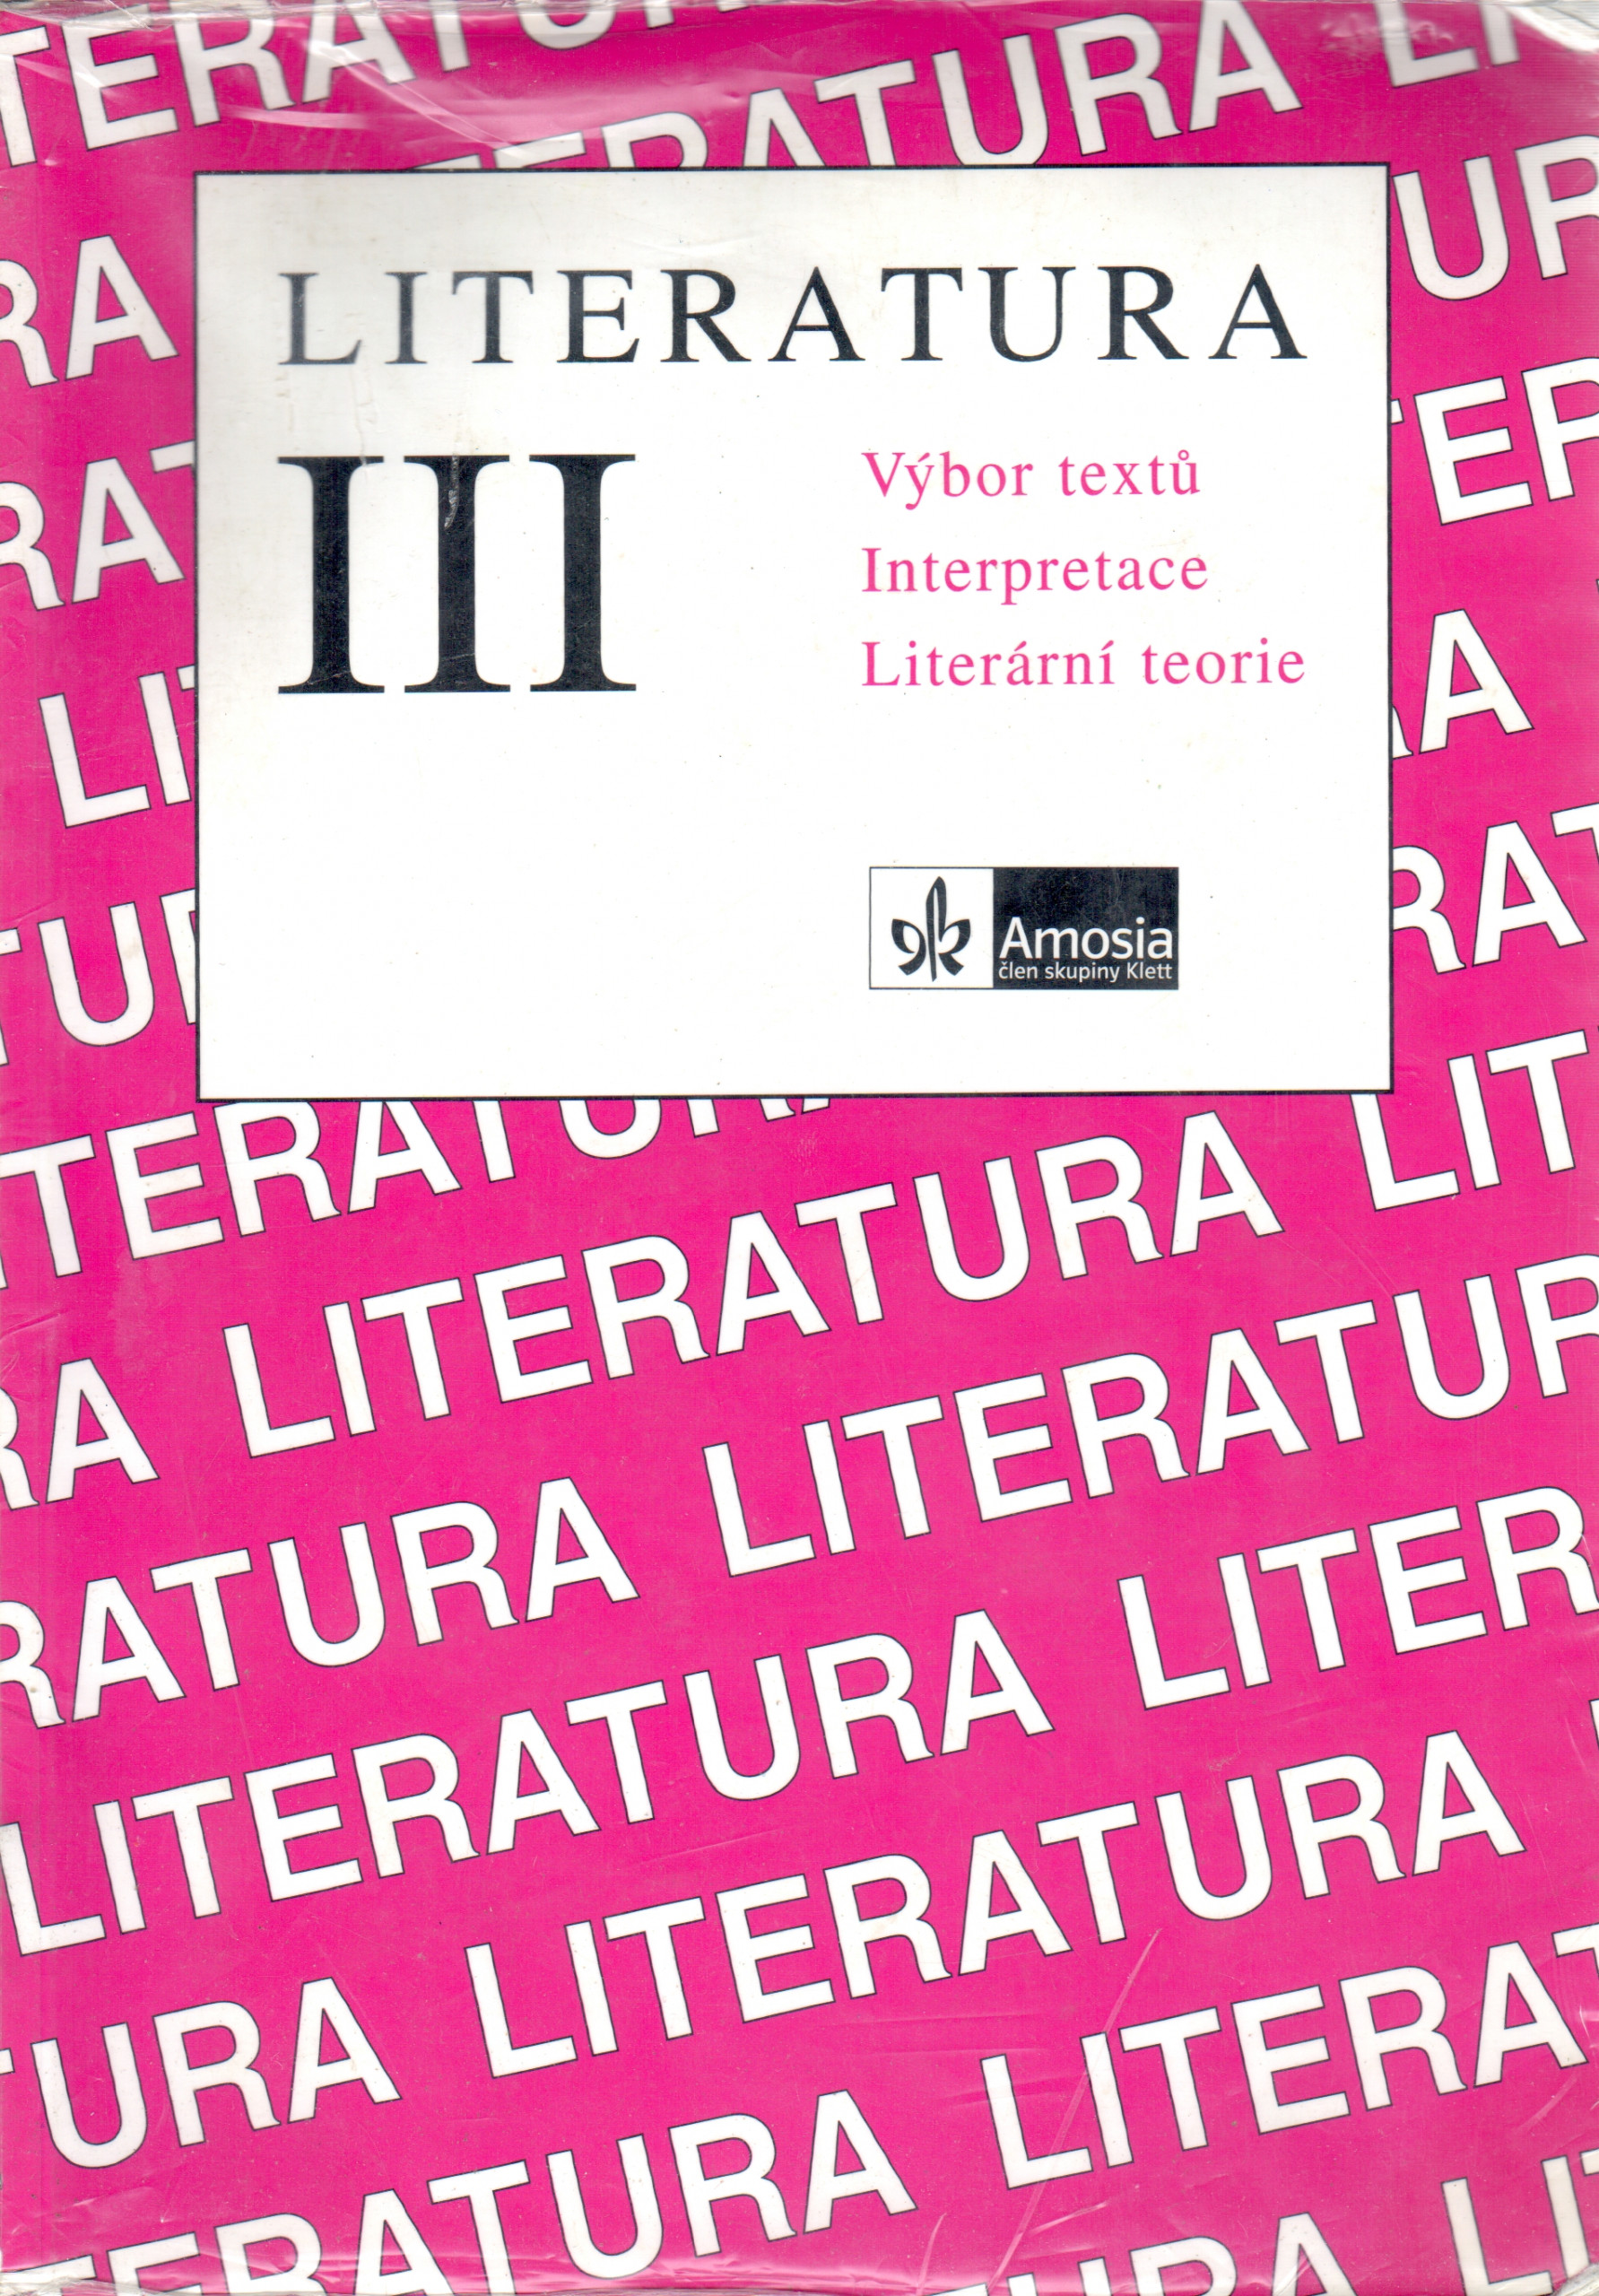 Literatura III: Výbor textů, interpretace, literární teorie - Náhled učebnice